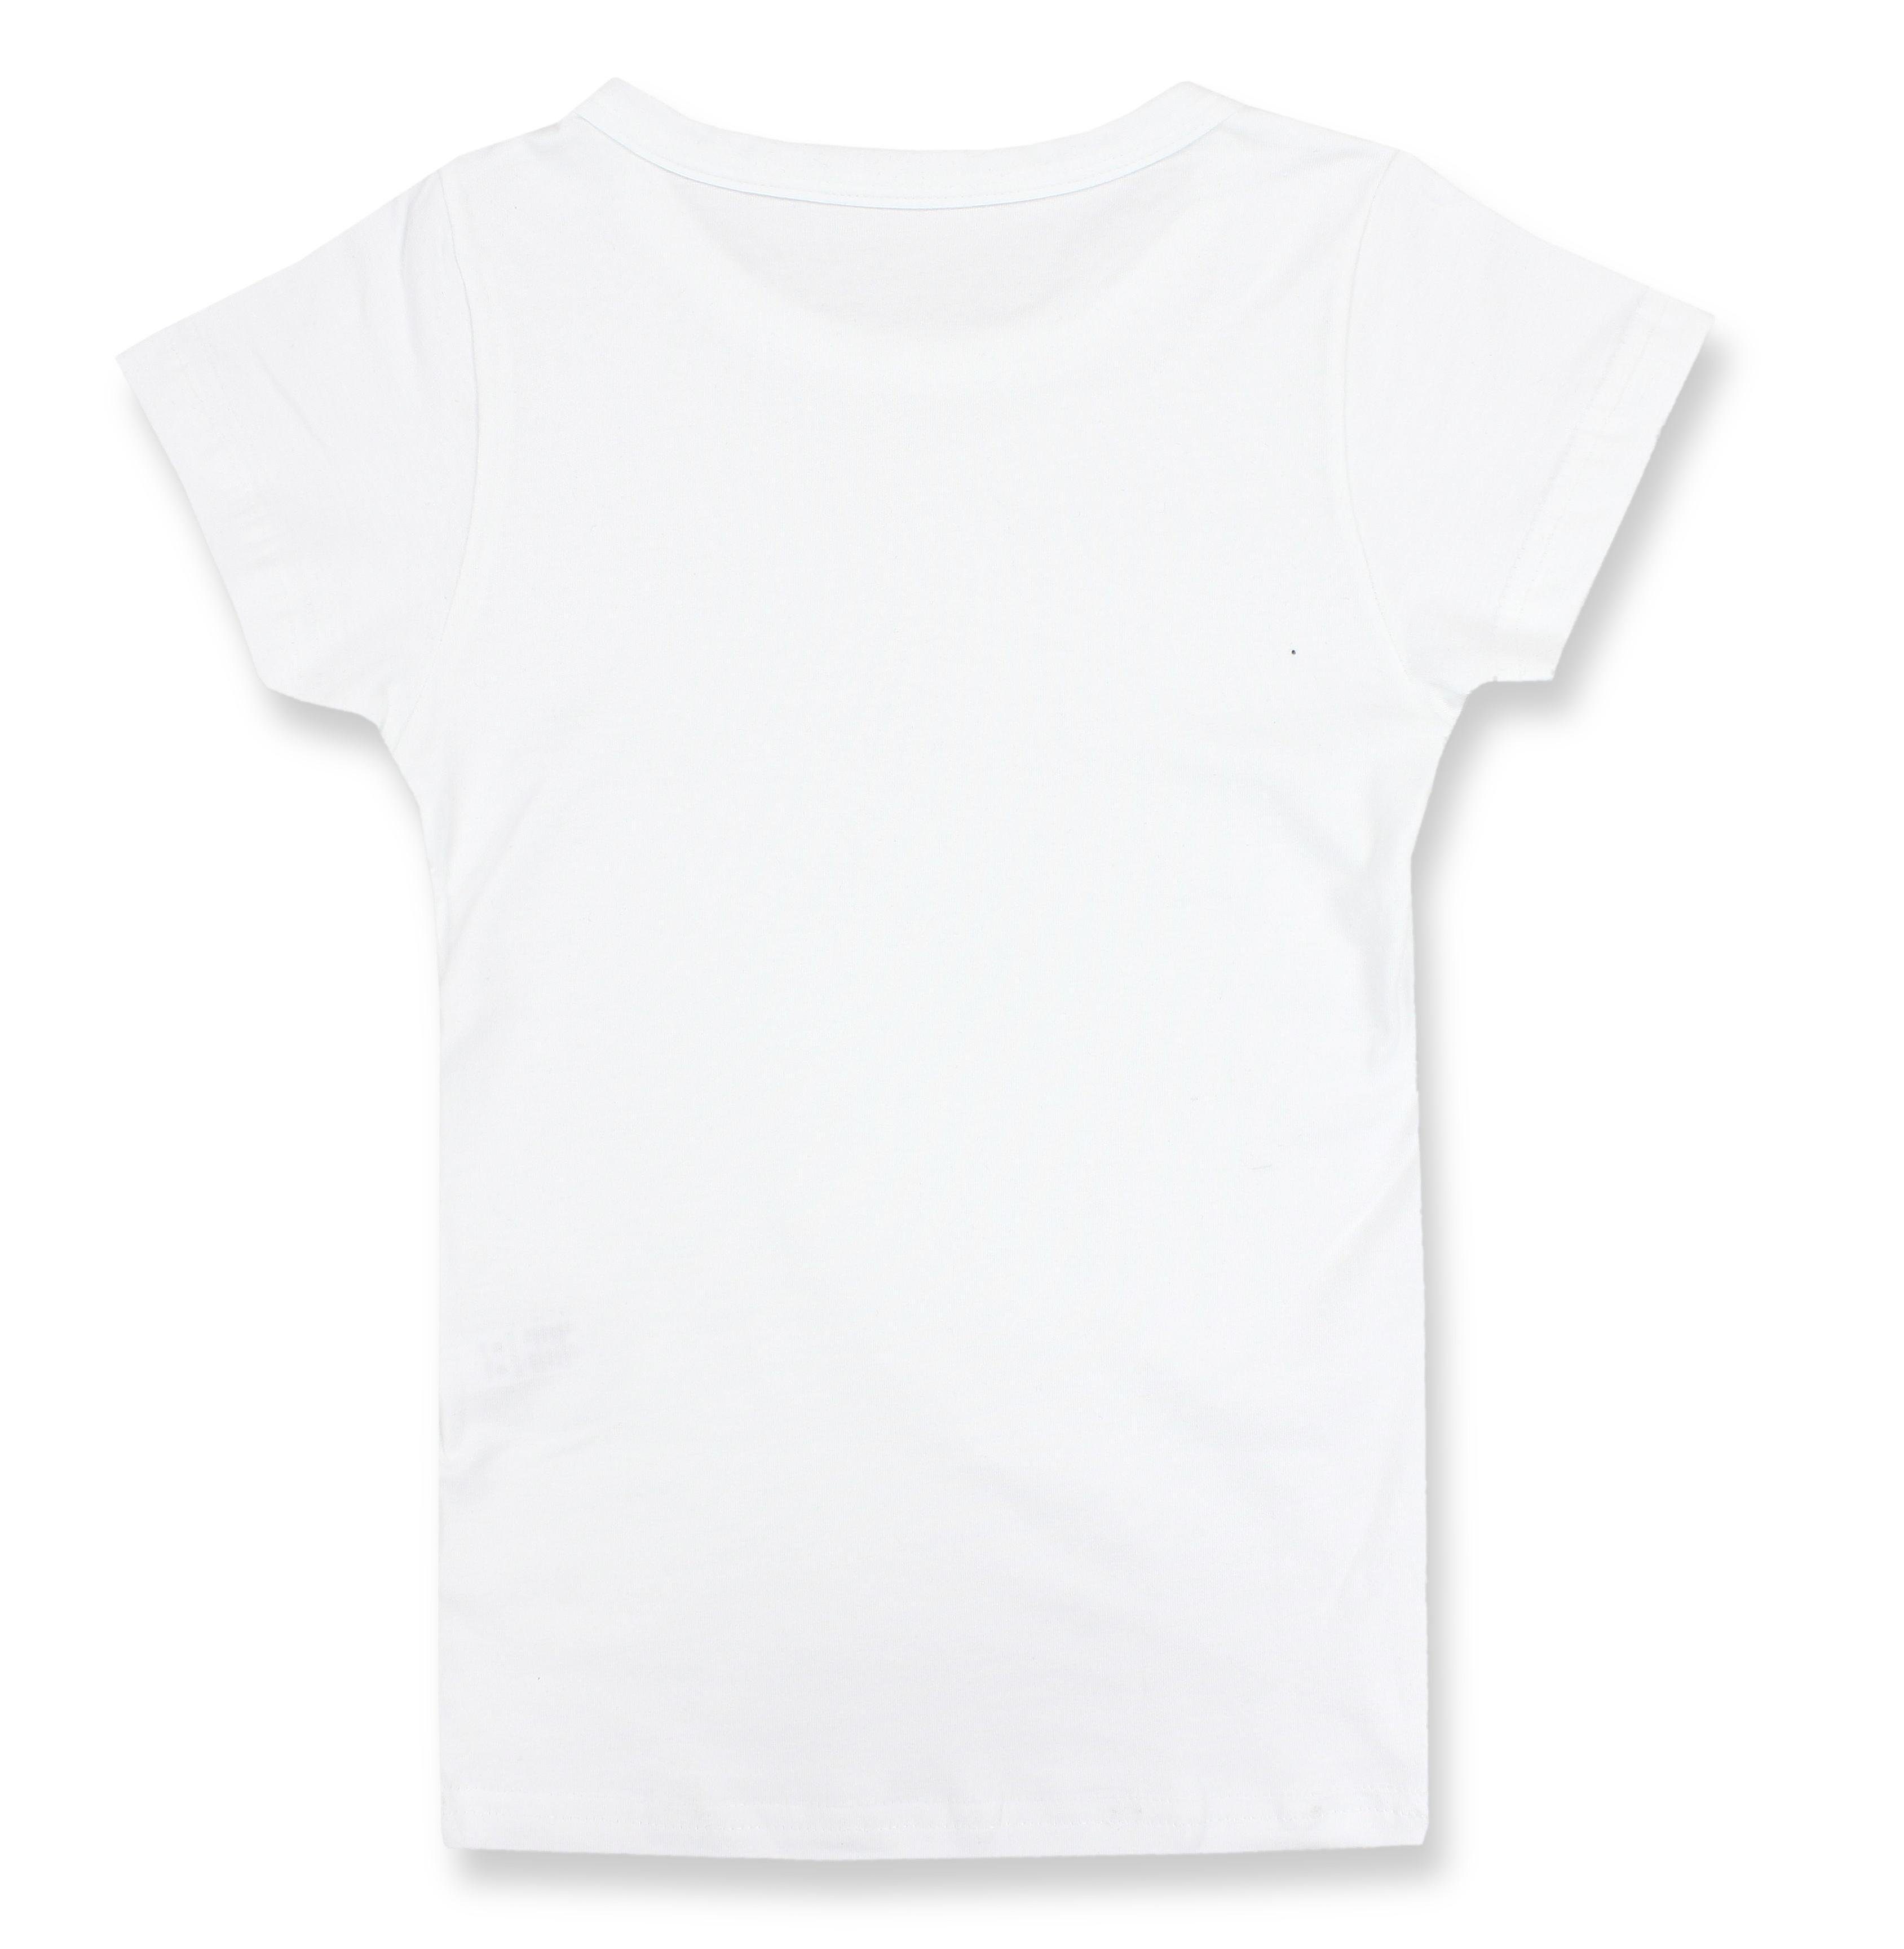 TupTam Unterhemd TupTam Kinder Basic T-Shirts Unterhemd 5er Jungen Kurzarm Weiß Pack